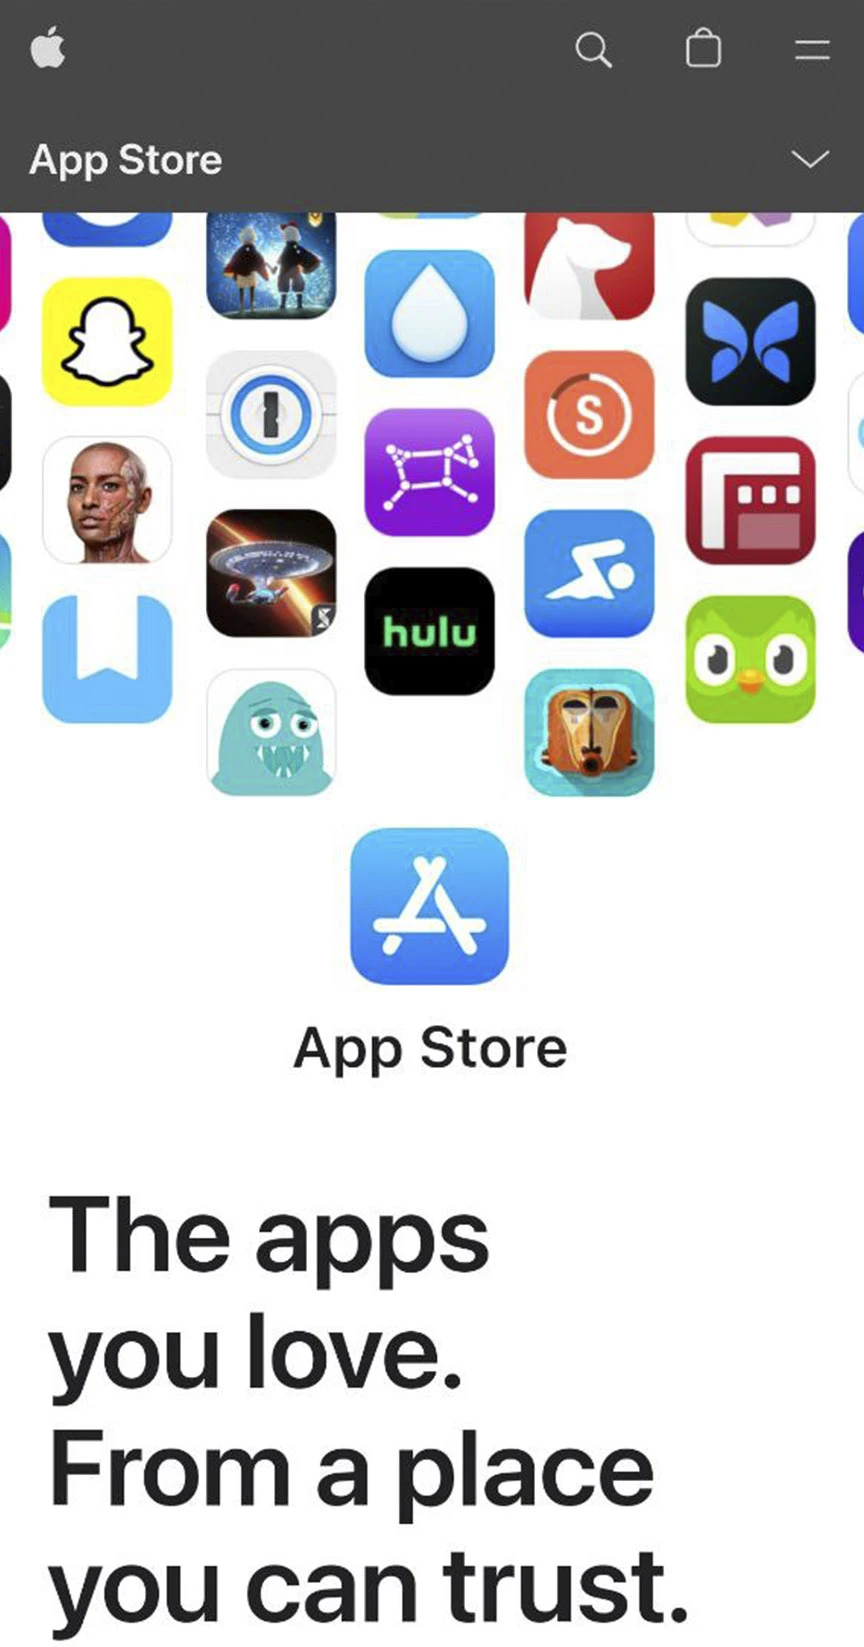 Посетите app store для установки приложения 1xbet для iOS.